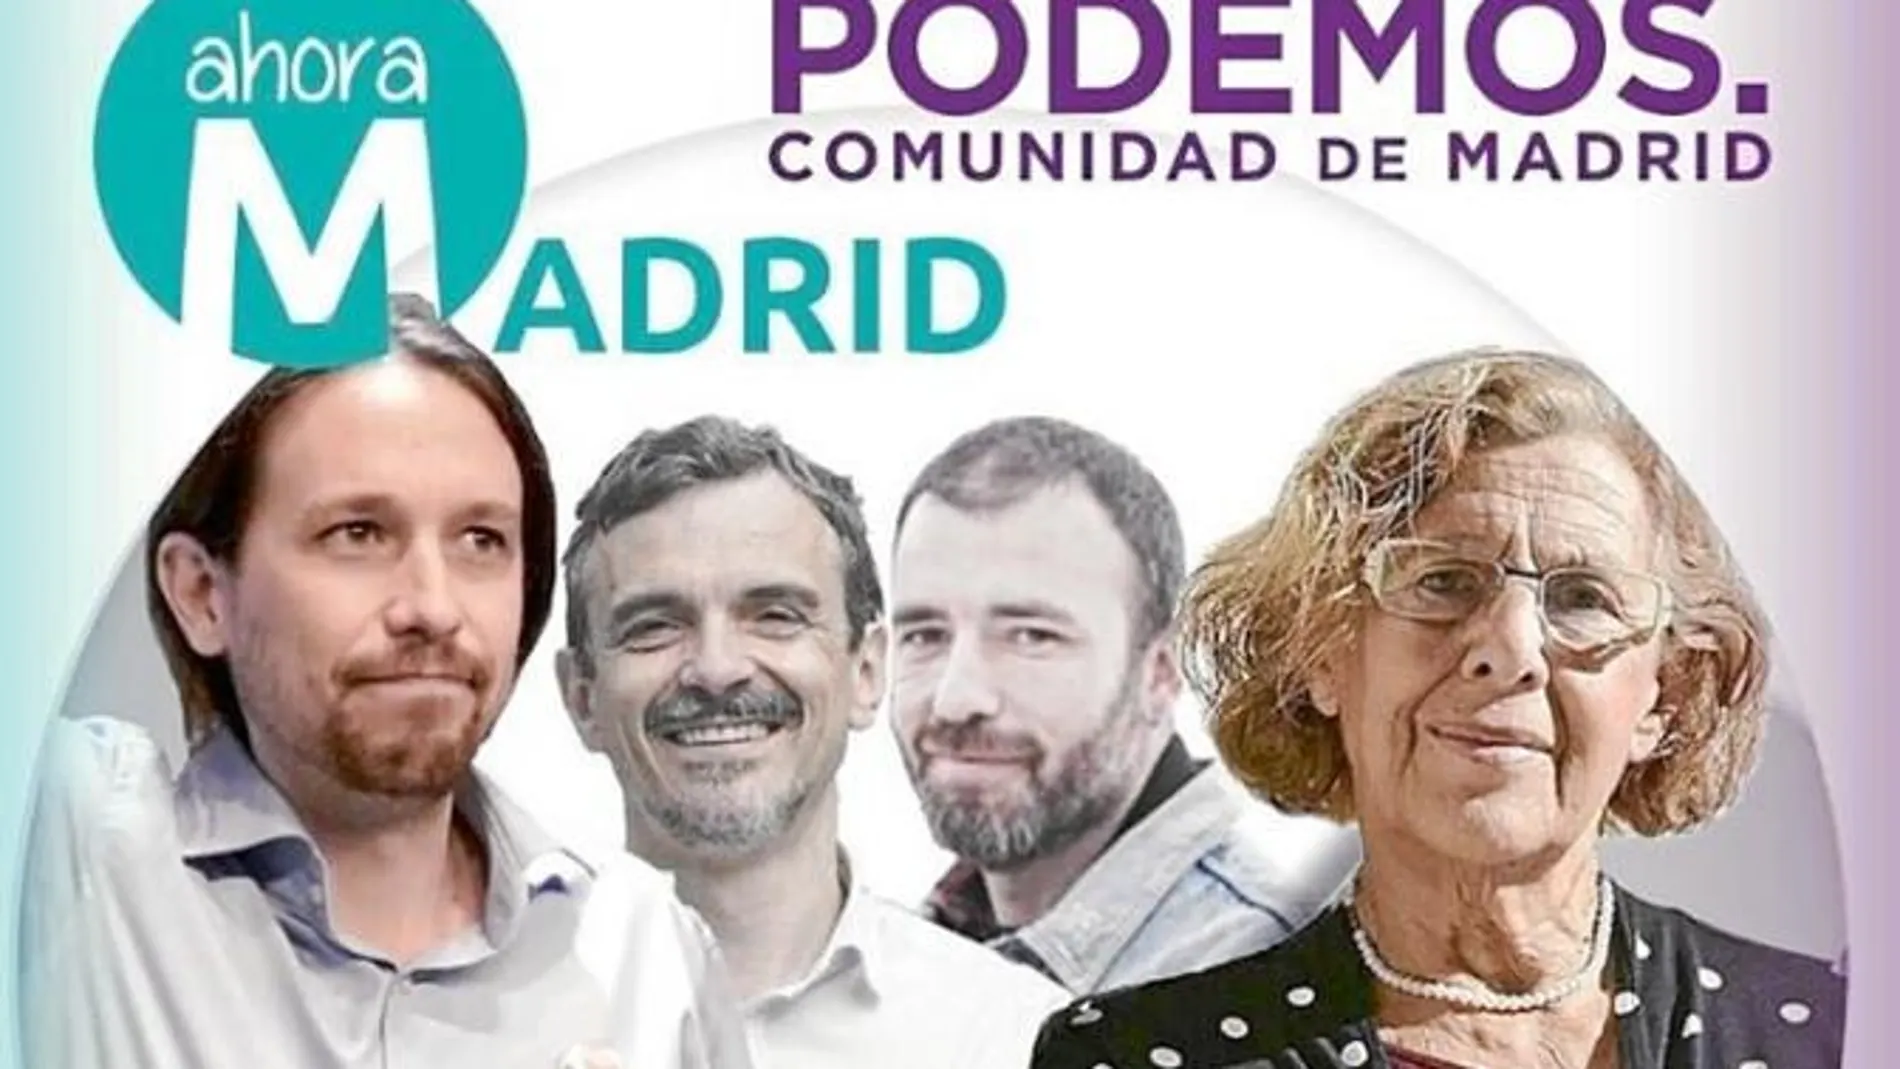 No comparten siglas, pero Podemos y su marca en la capital, AhoraMadrid, celebrarán un mitin juntos mañana con Pablo Iglesias, como estrella principal.